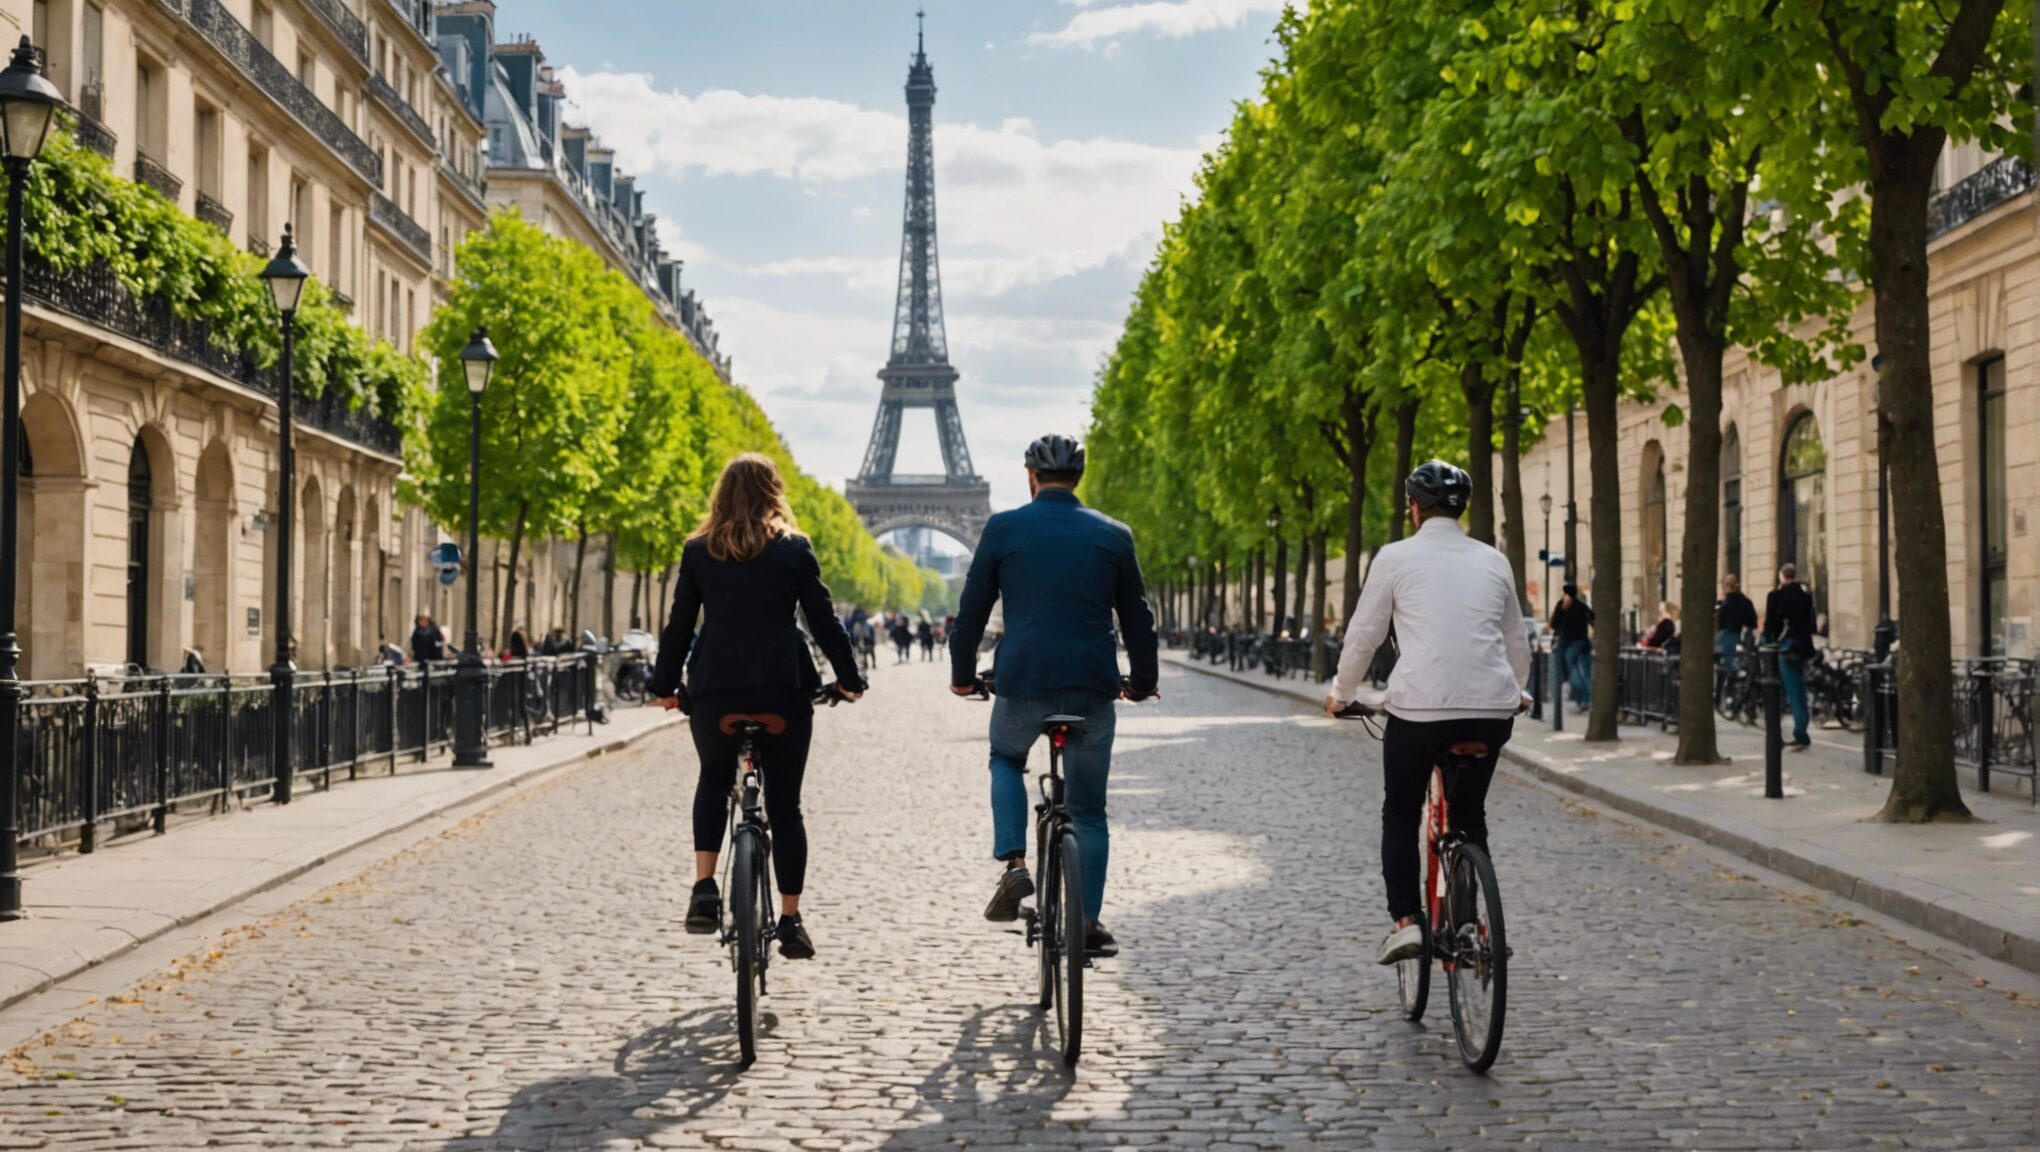 découvrez les 7 itinéraires secrets pour une promenade romantique à vélo à paris en amoureux ! profitez d'une balade inoubliable dans la ville lumière avec ces parcours exclusifs.